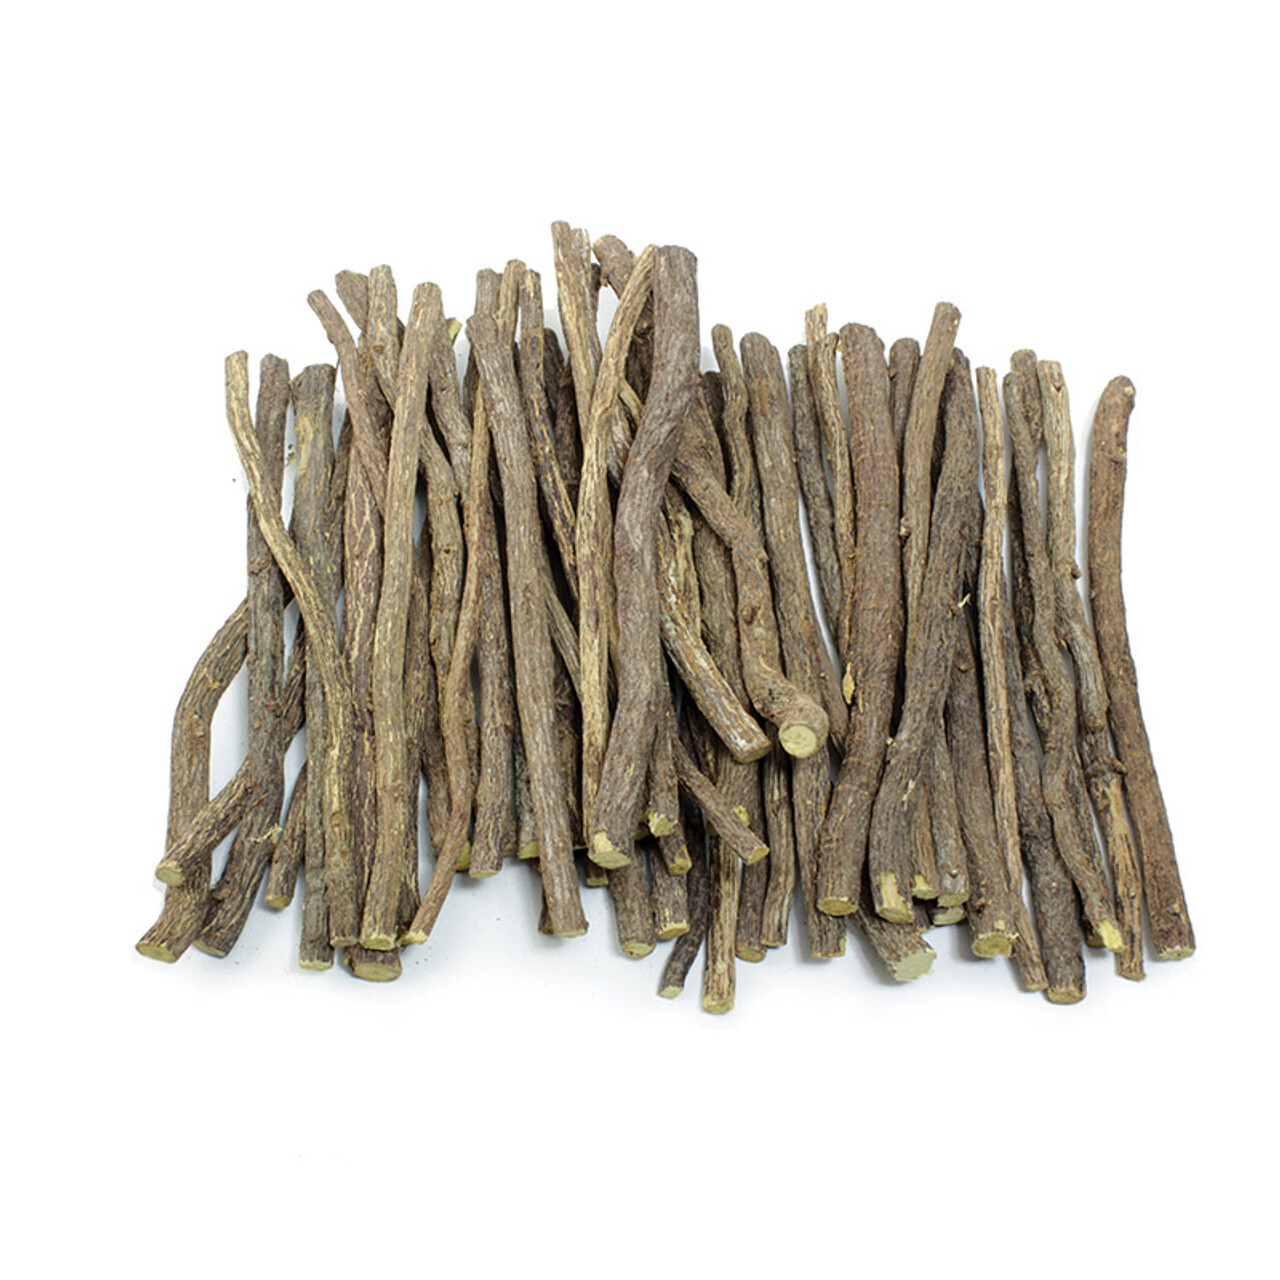 Chew Sticks - Various Flavors - 1 Lb